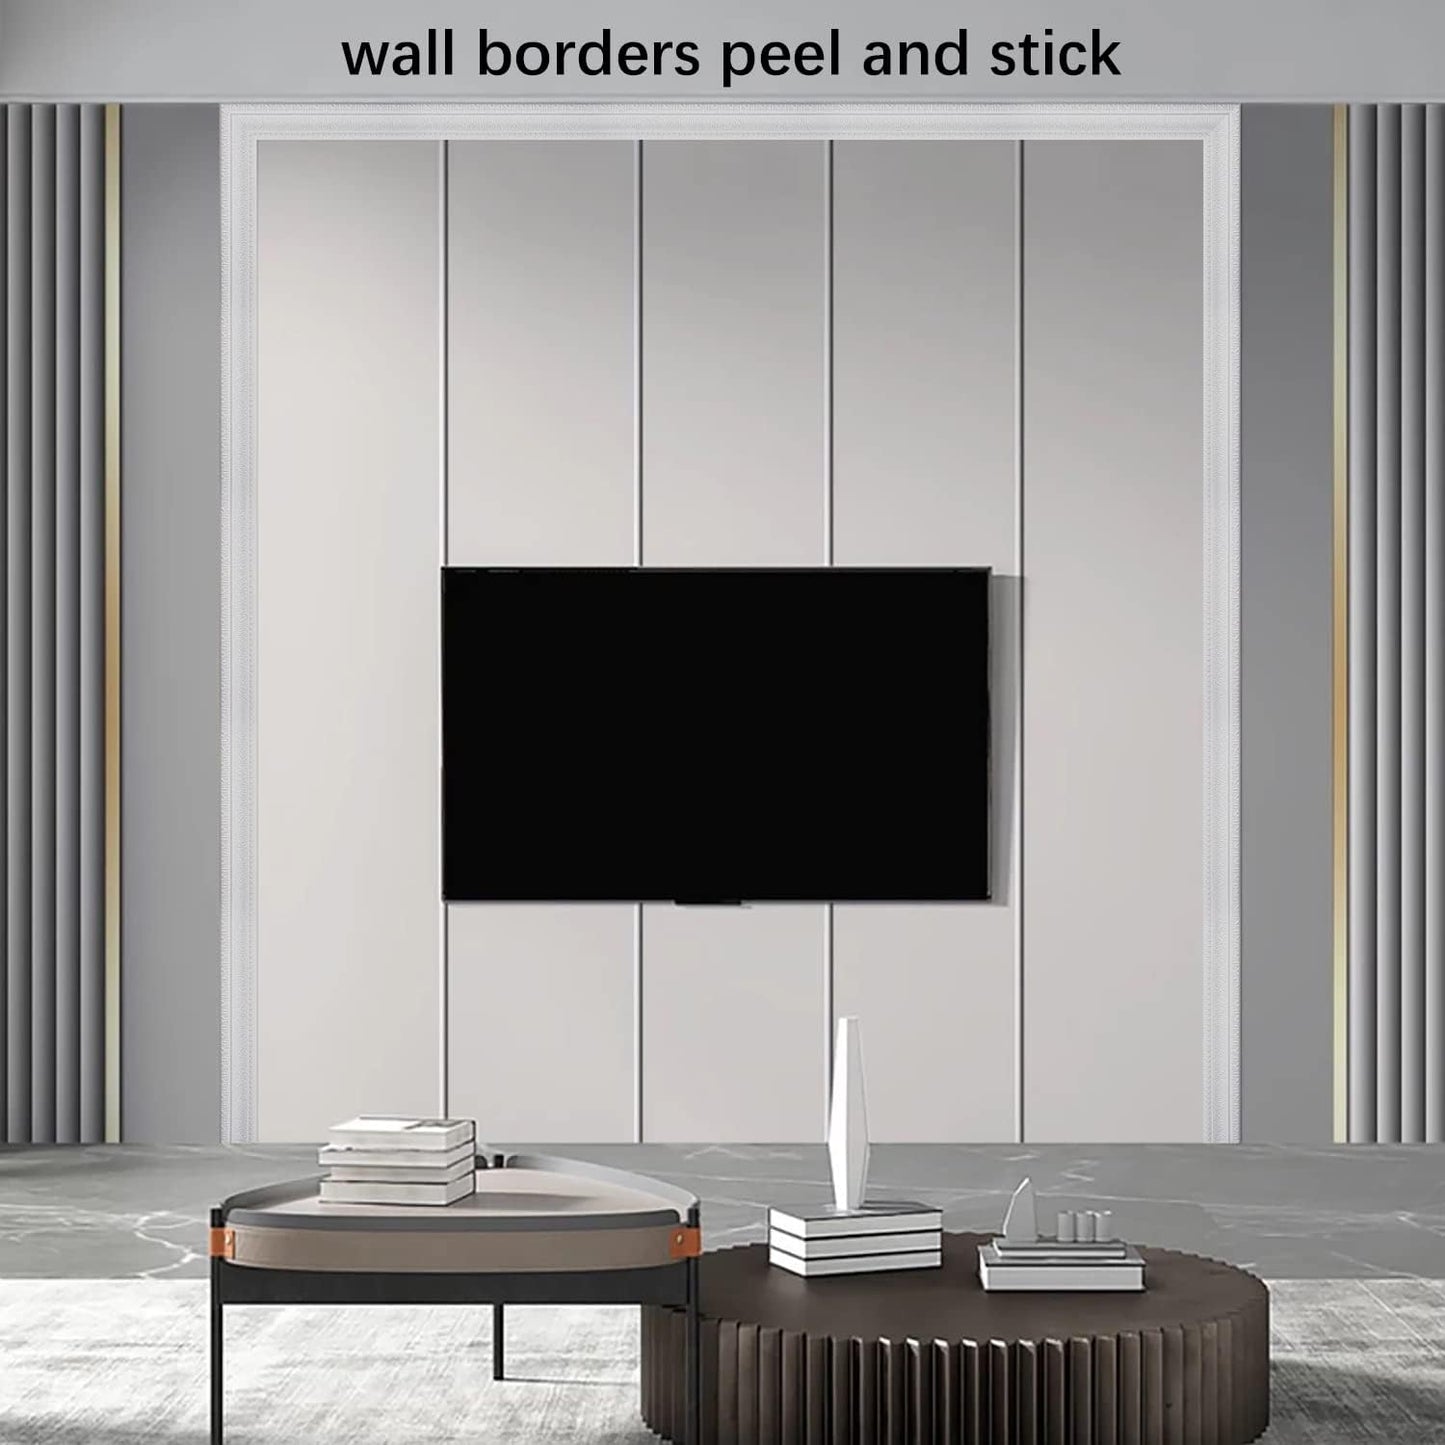 Yutianli Kronenleiste zum Abziehen und Aufkleben, Tapetenbordüre, flexible Wandsockelleiste, selbstklebende Vinyl-Fußleiste, weiße Schaumstoff-Wandleiste, 3D-Spiegelbordüre (2 Stück, 178, weiß) 